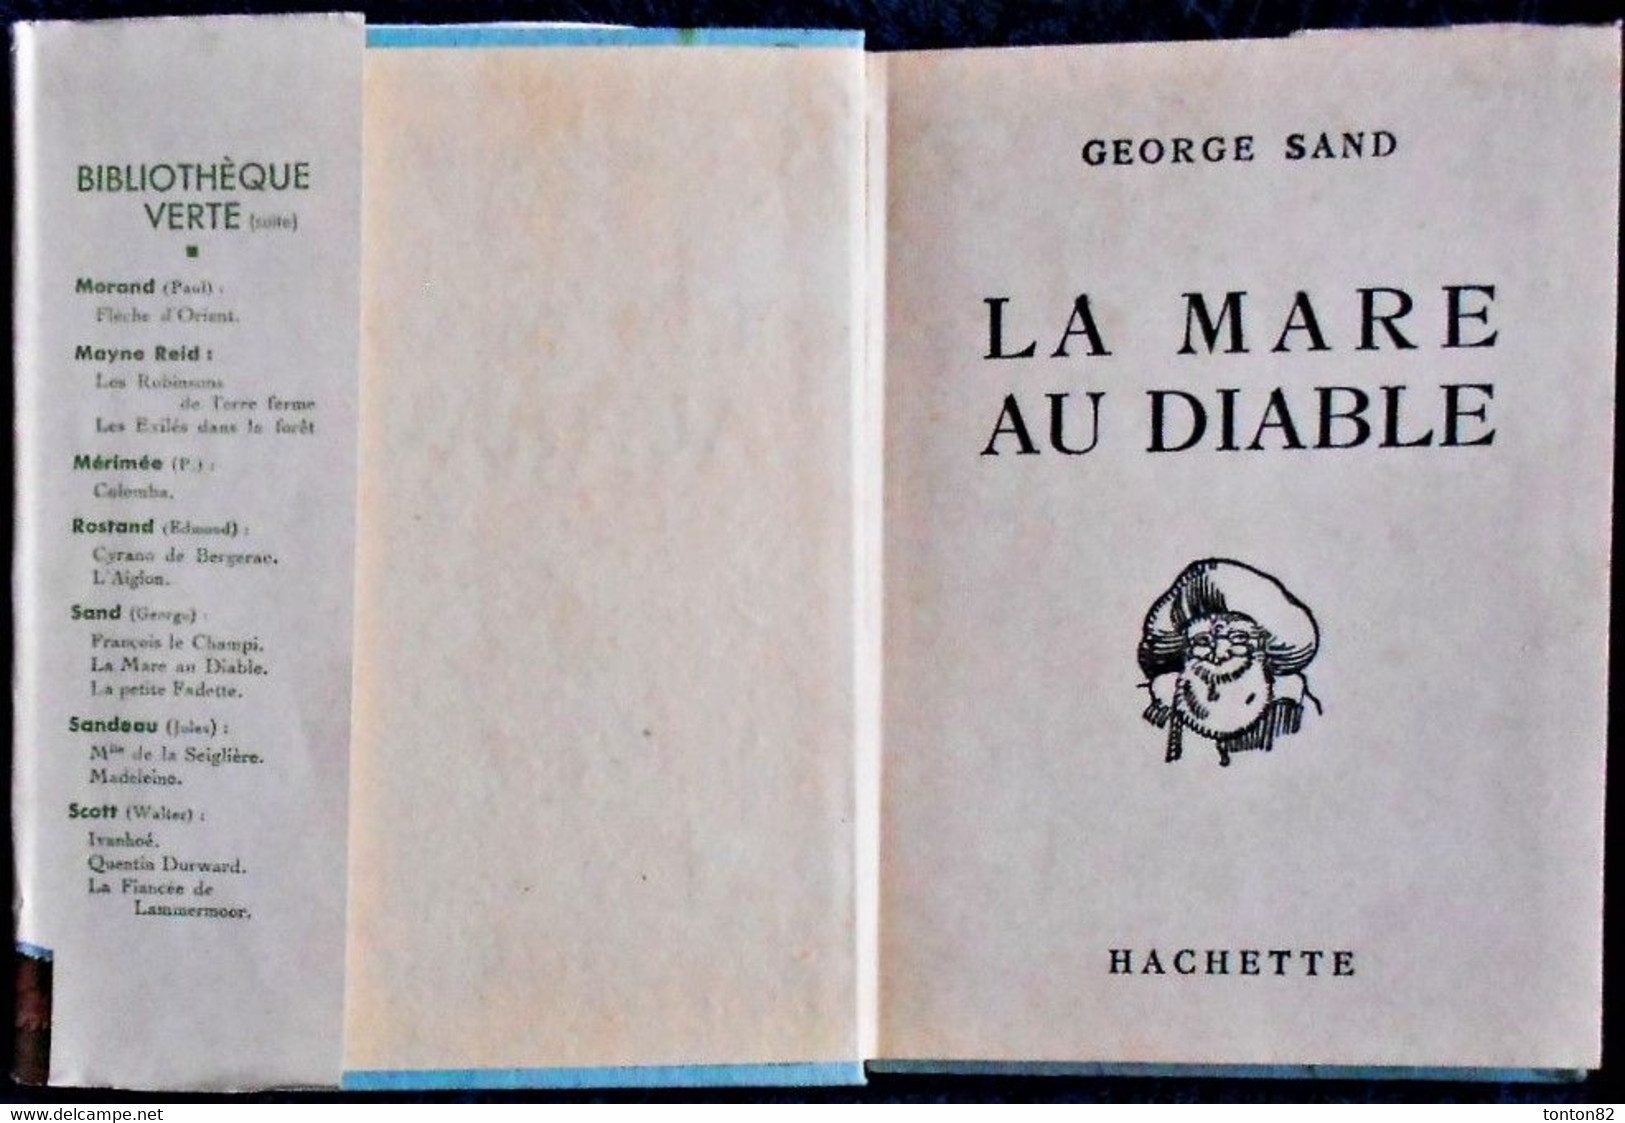 George Sand - La Mare Au Diable - Hachette - Bibliothèque Verte- ( 1942 ) . - Bibliothèque De La Jeunesse